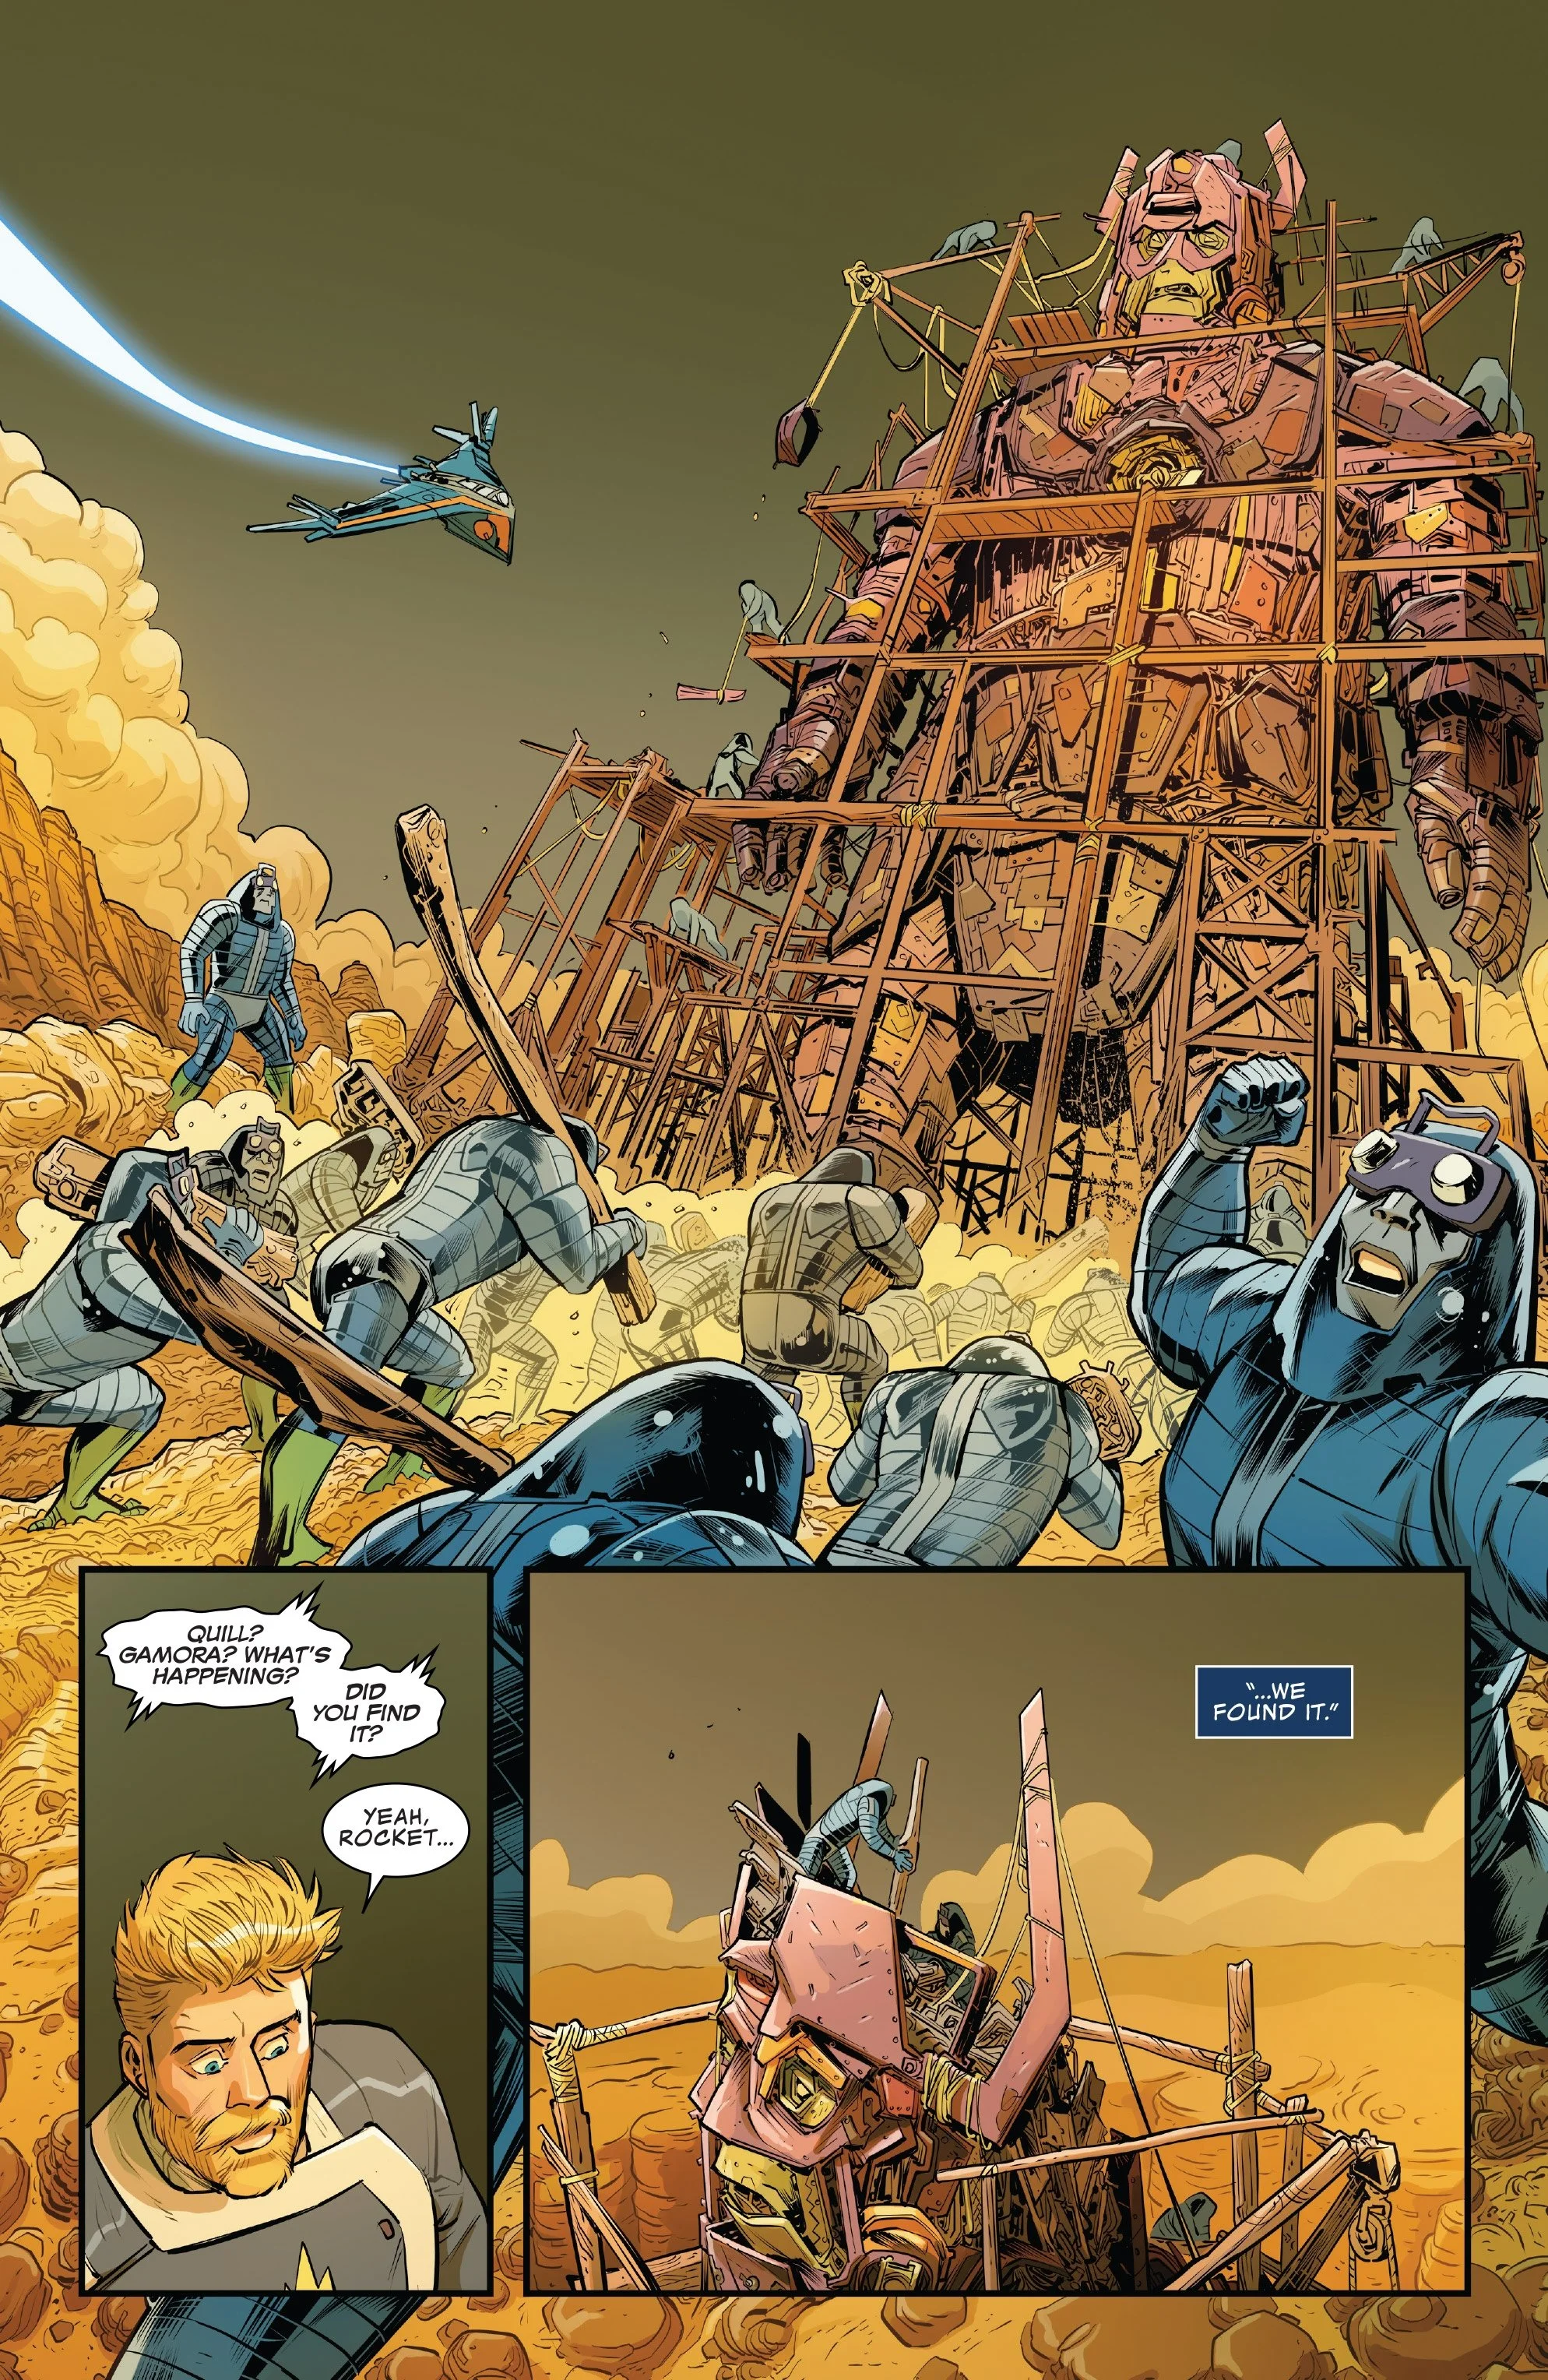 Secret Empire: Стражи Галактики ищут союзников против Гидры в космосе - фото 3